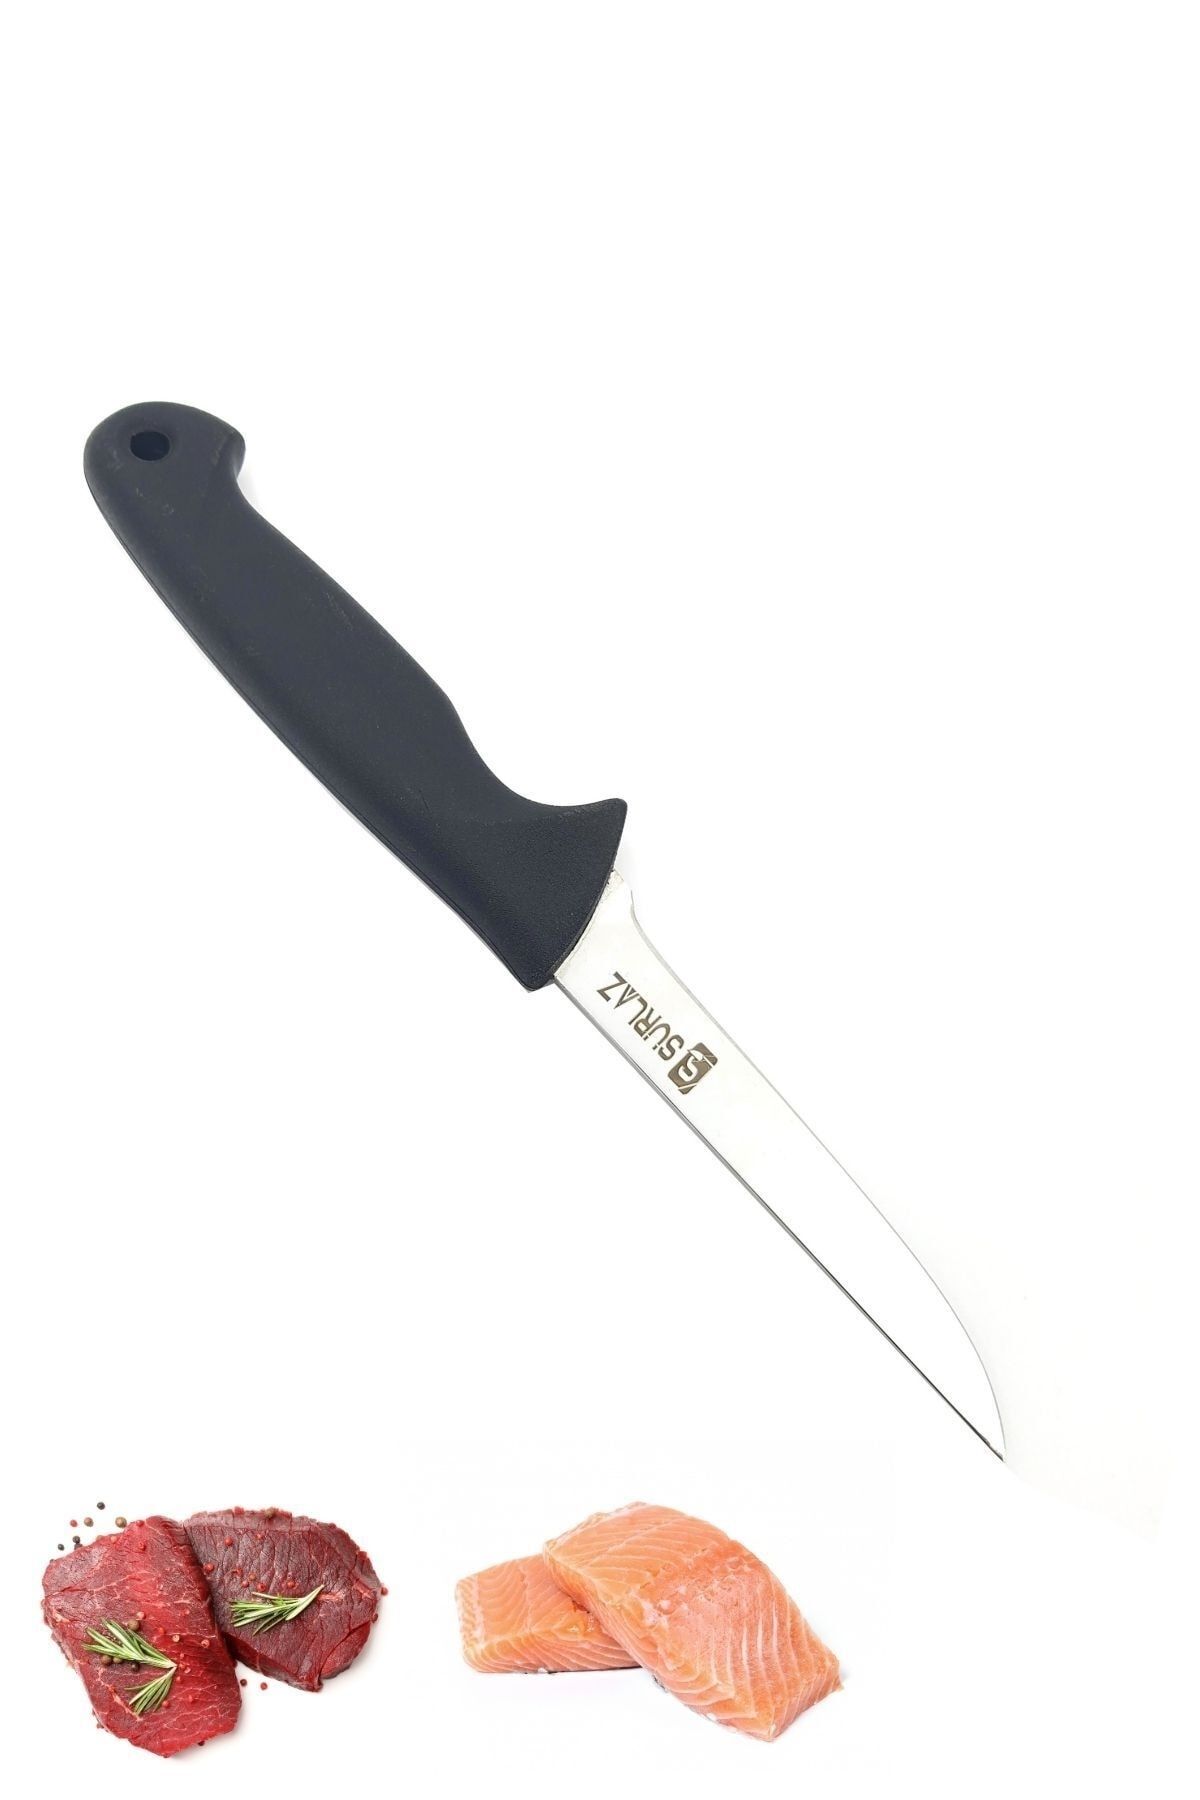 SürLaz Fileto Et Bıçağı Mutfak Bıçağı 12 Cm Mutfak Bıçağı